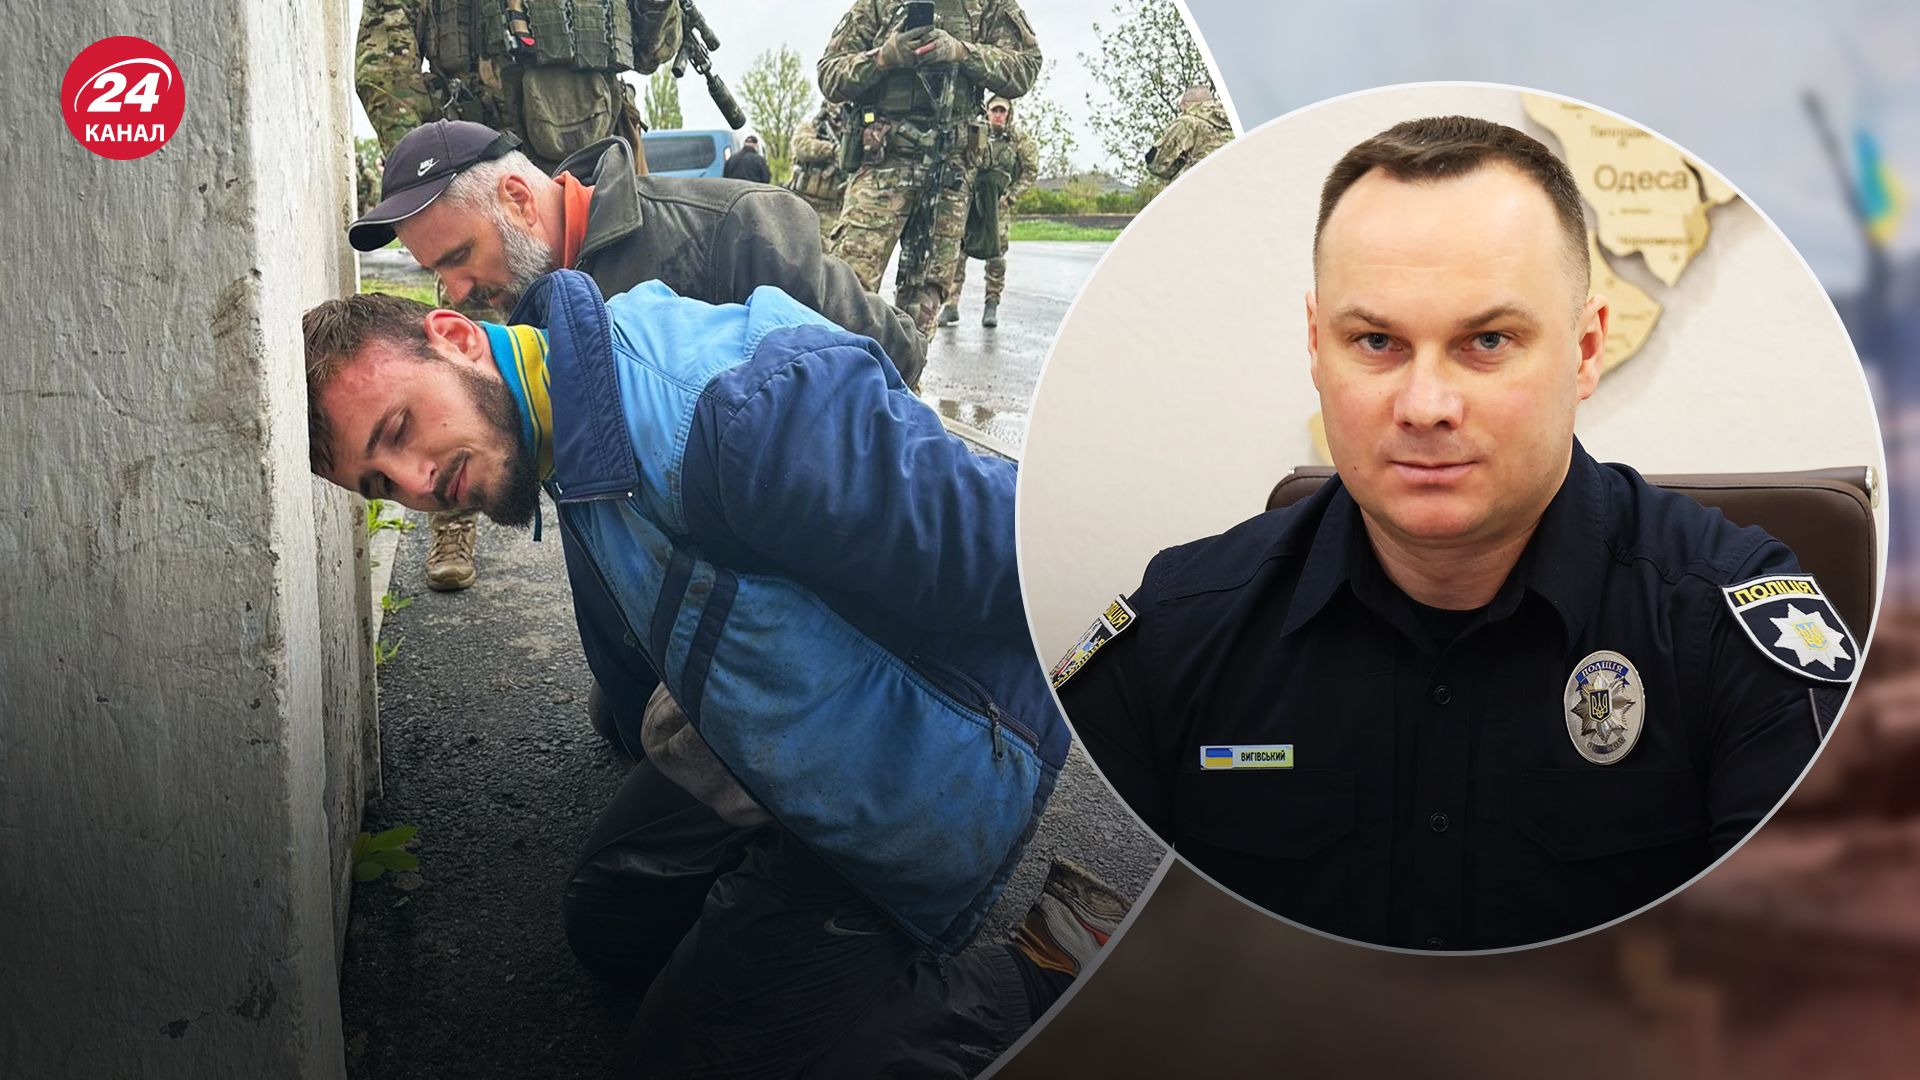 Что известно о мужчинах, которые напали на полицейских в Винницкой области